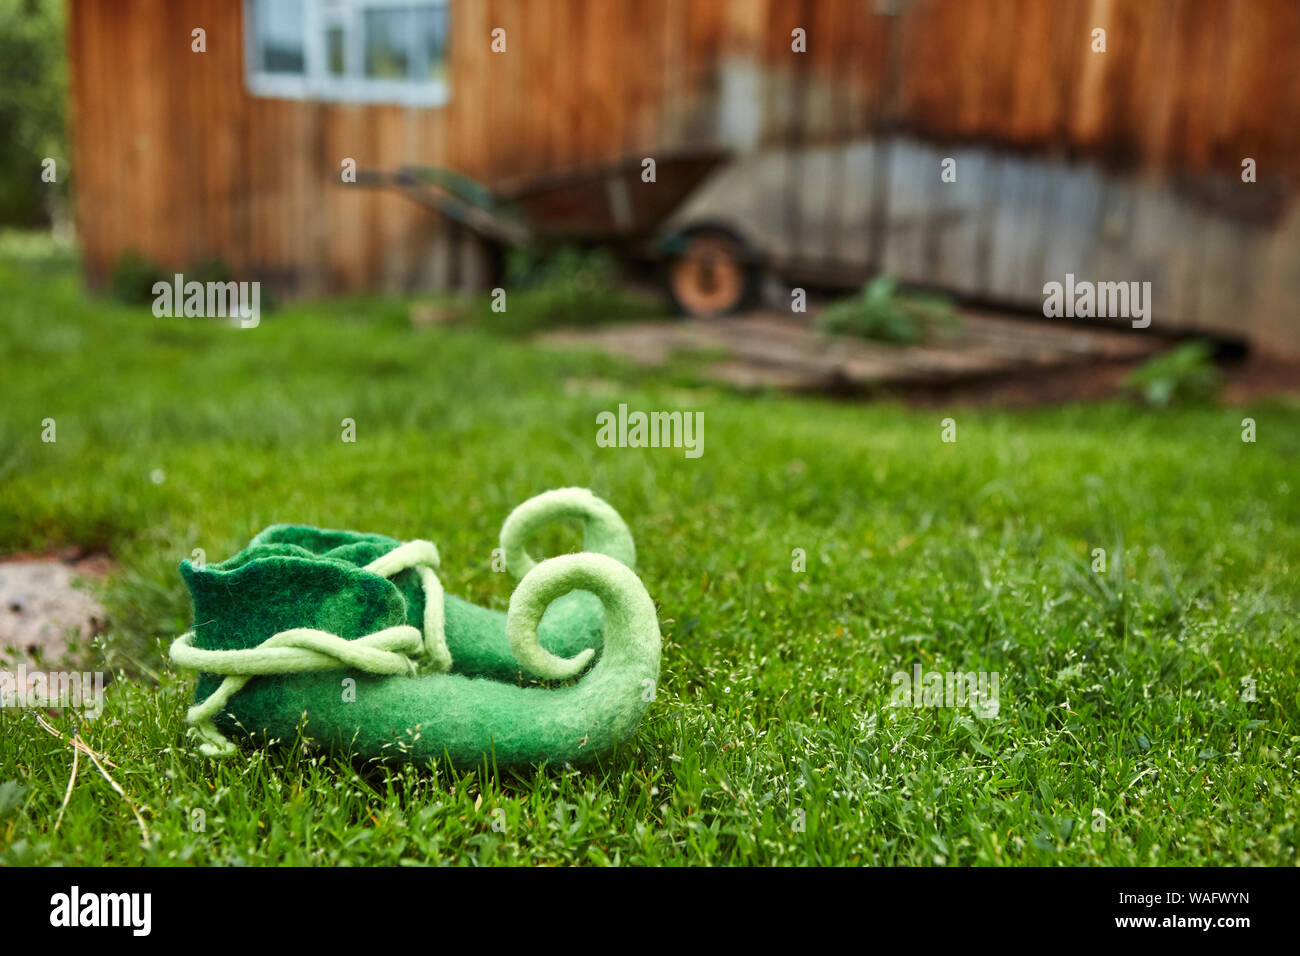 Scarpe favolose creature in piedi sull'erba, sullo sfondo di una tettoia in legno e una piccola a tre ruote carrello Foto Stock